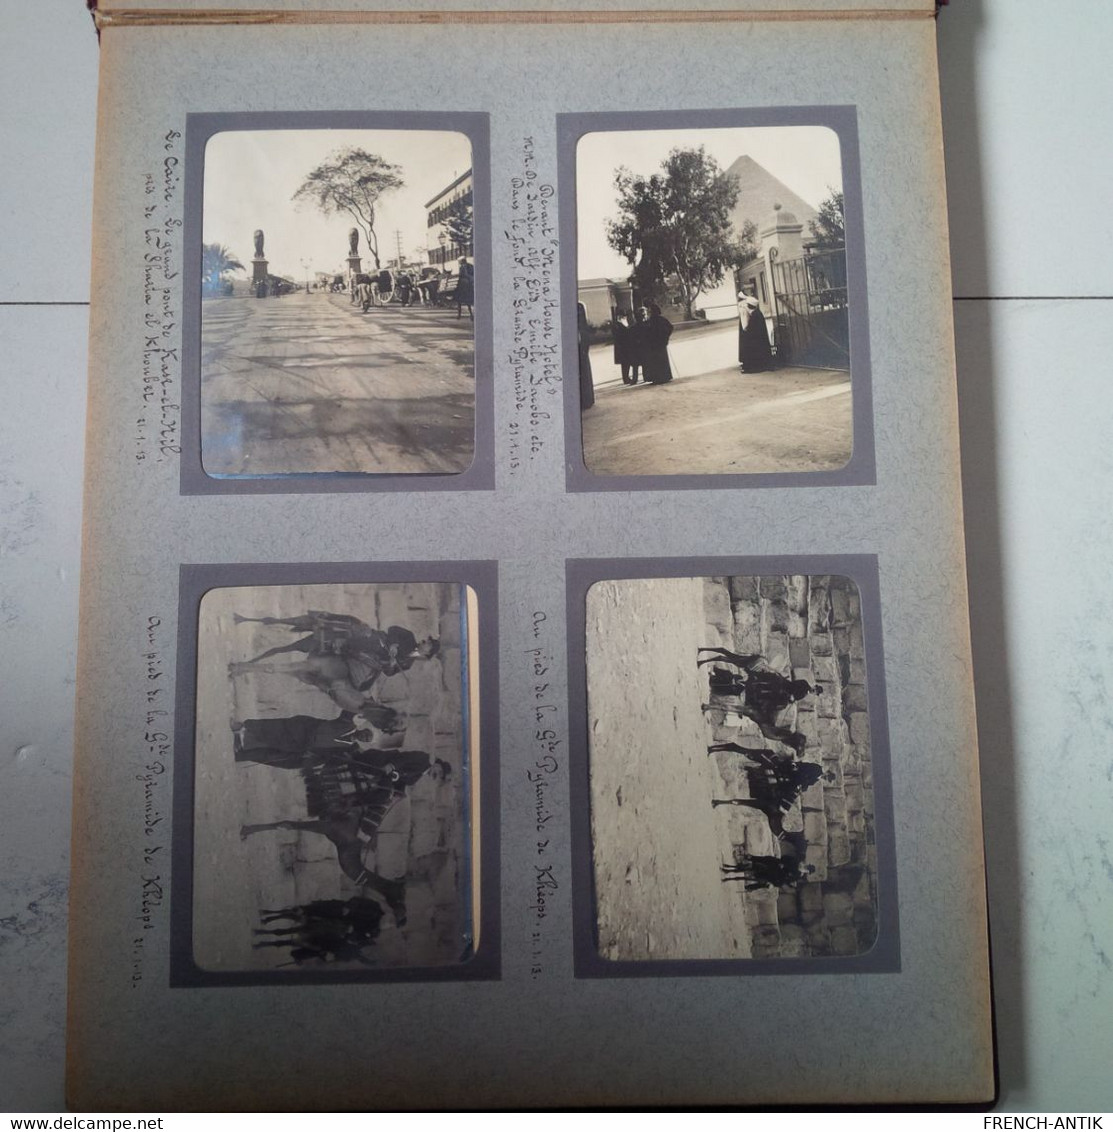 ALBUM PHOTO VOYAGE BATEAU PRINZ REGENT LUITPOLD NAPLES ALEXANDRIE PYRAMIDE HELIOPOLIS KAFR EL DAWWAR 1913 - Alben & Sammlungen